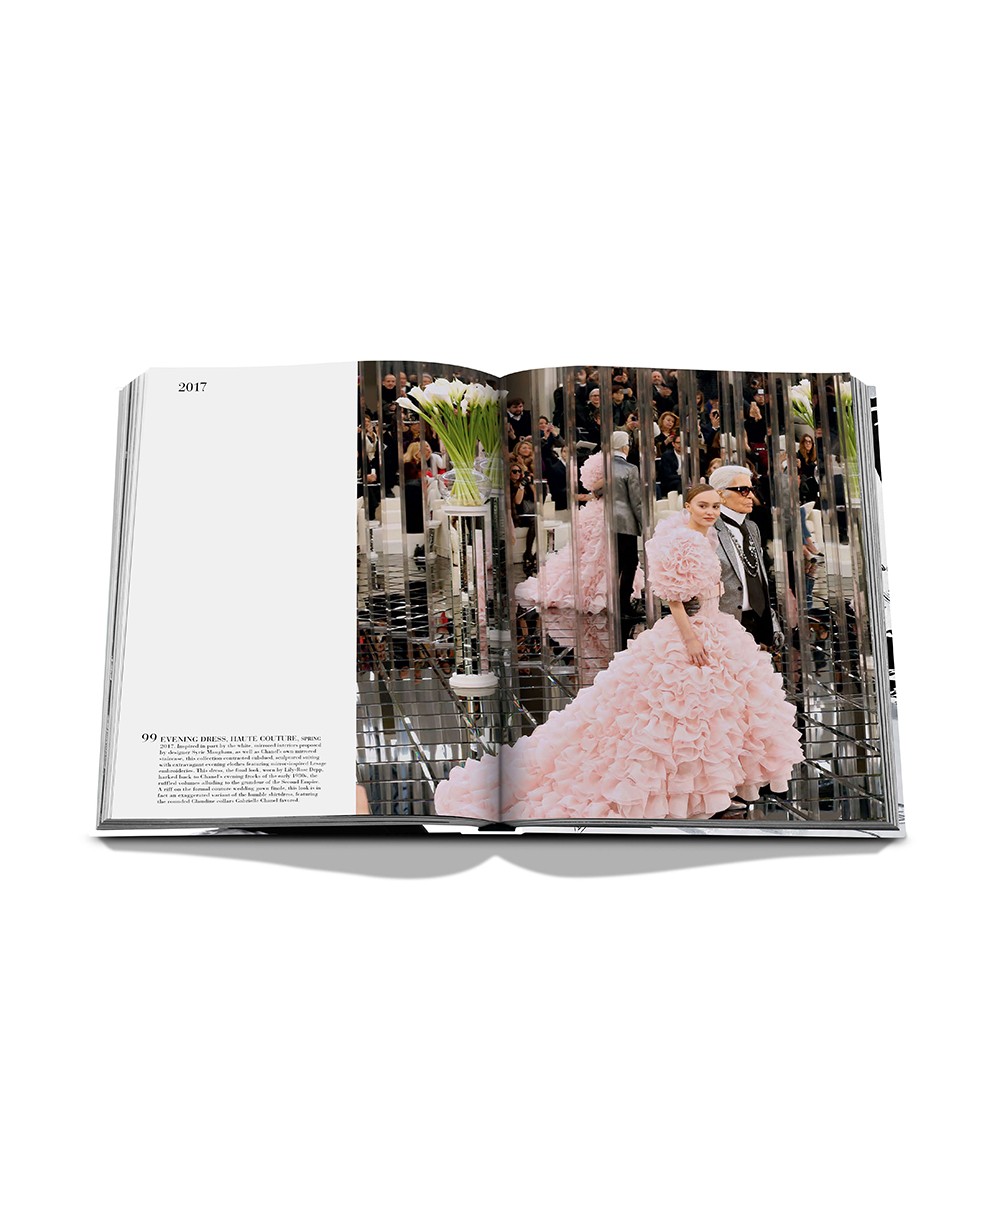 Das Produktbild zeigt den Bildband „Chanel: The Legend of an Icon“ von Assouline - RAUM concept store